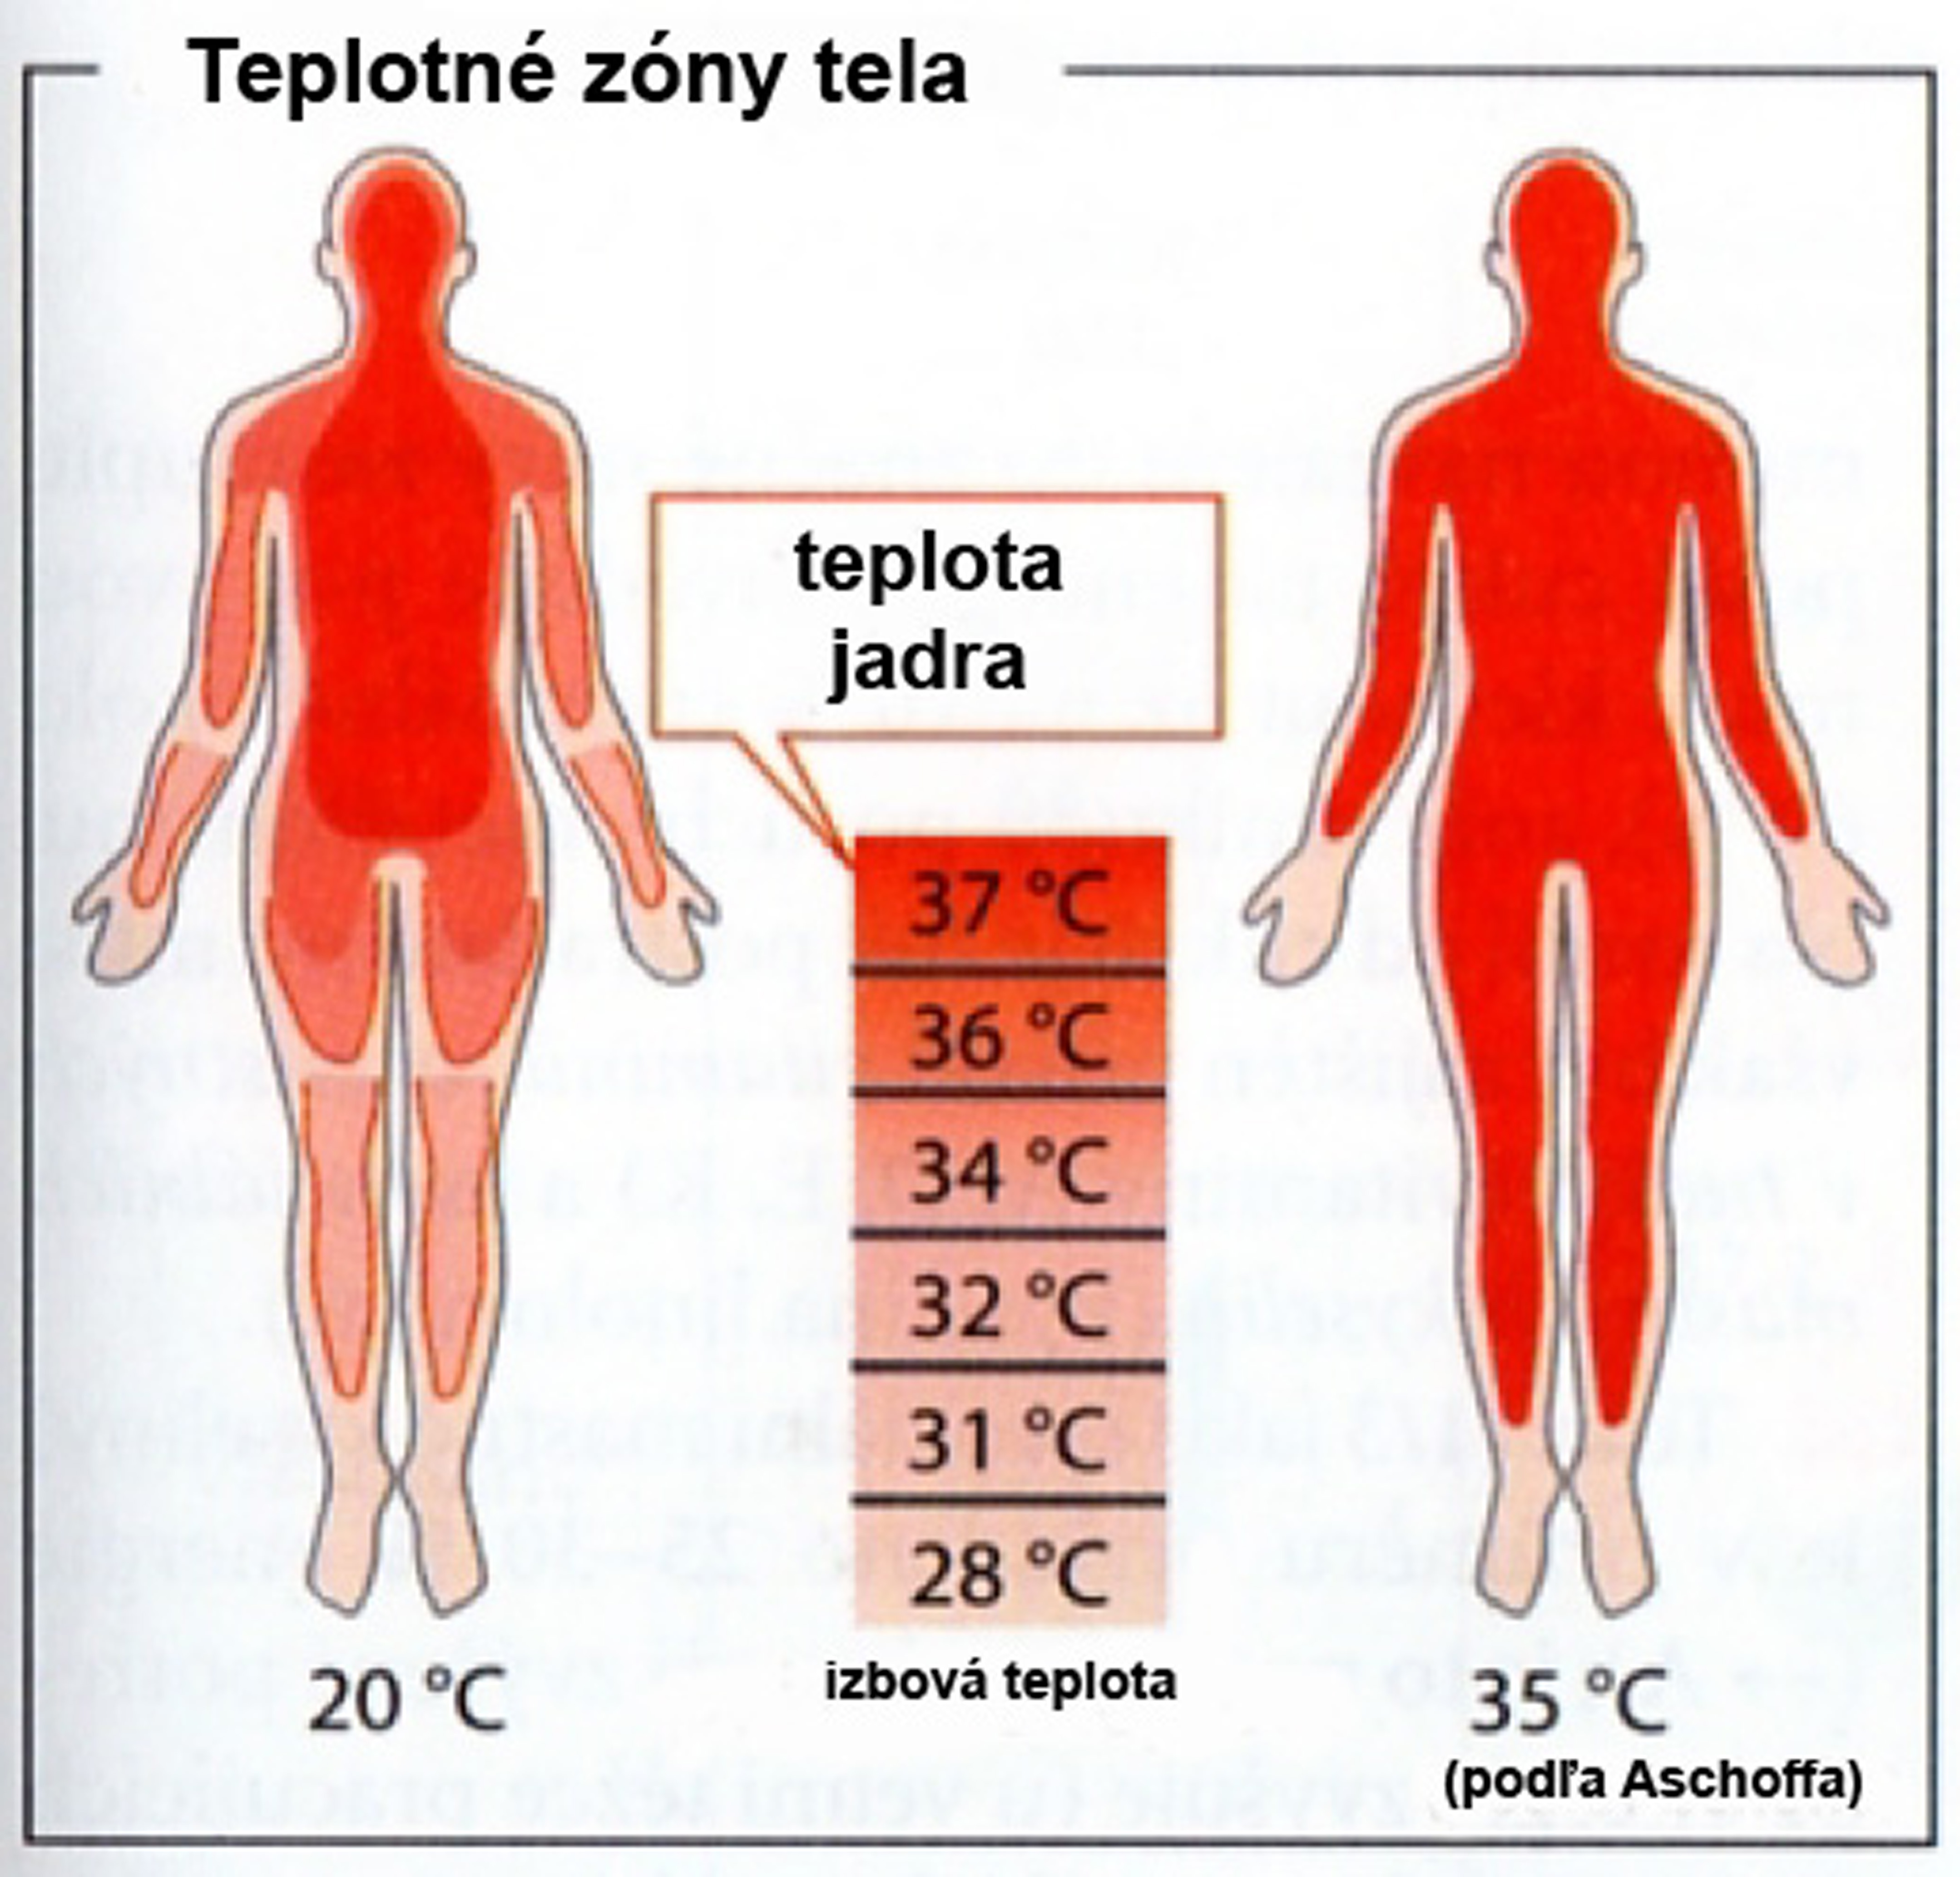 Obr. 1a Teplotné zóny v tele človeka a výmena tepla medzi tepnami a žilami